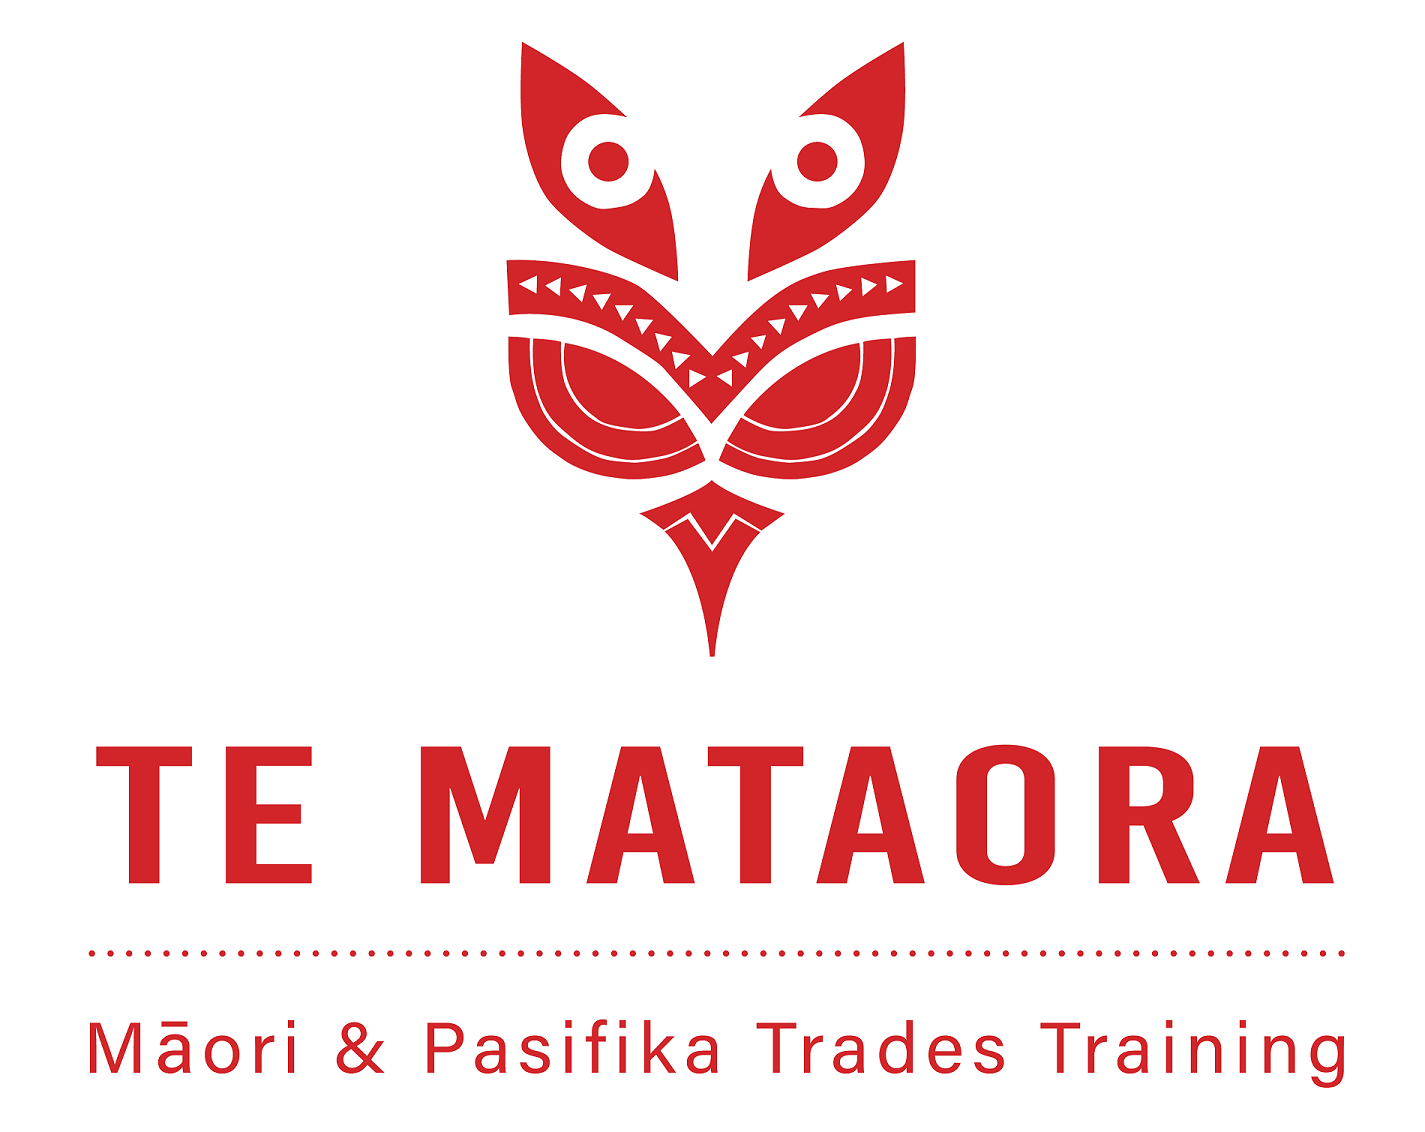 Maori and Pasifika Trades Training at UCOL